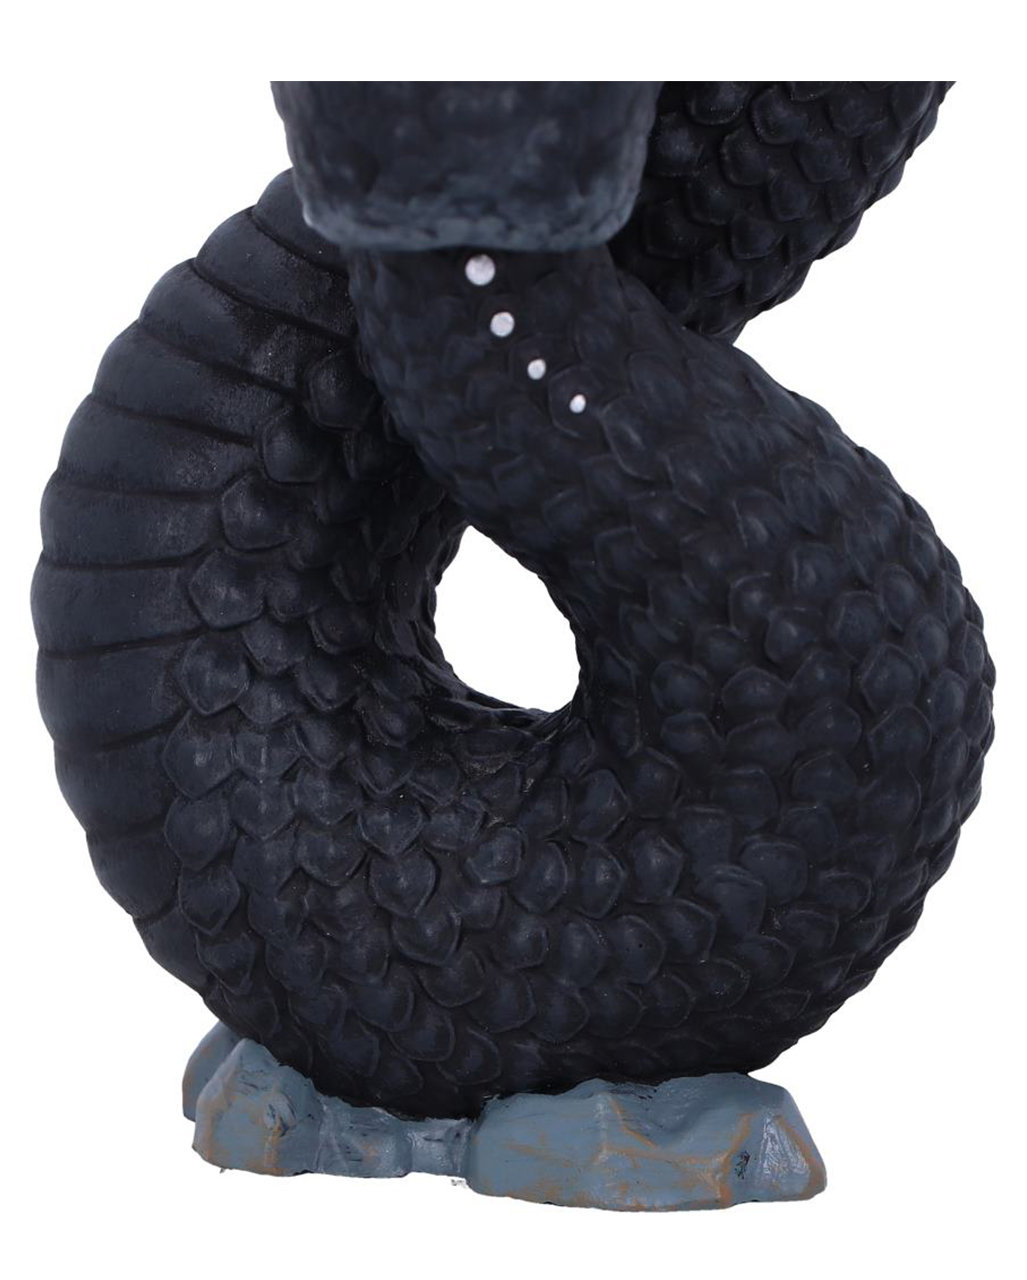 Ouroboros Occult Snakes Figure 9.6cm | Horror-Shop.com